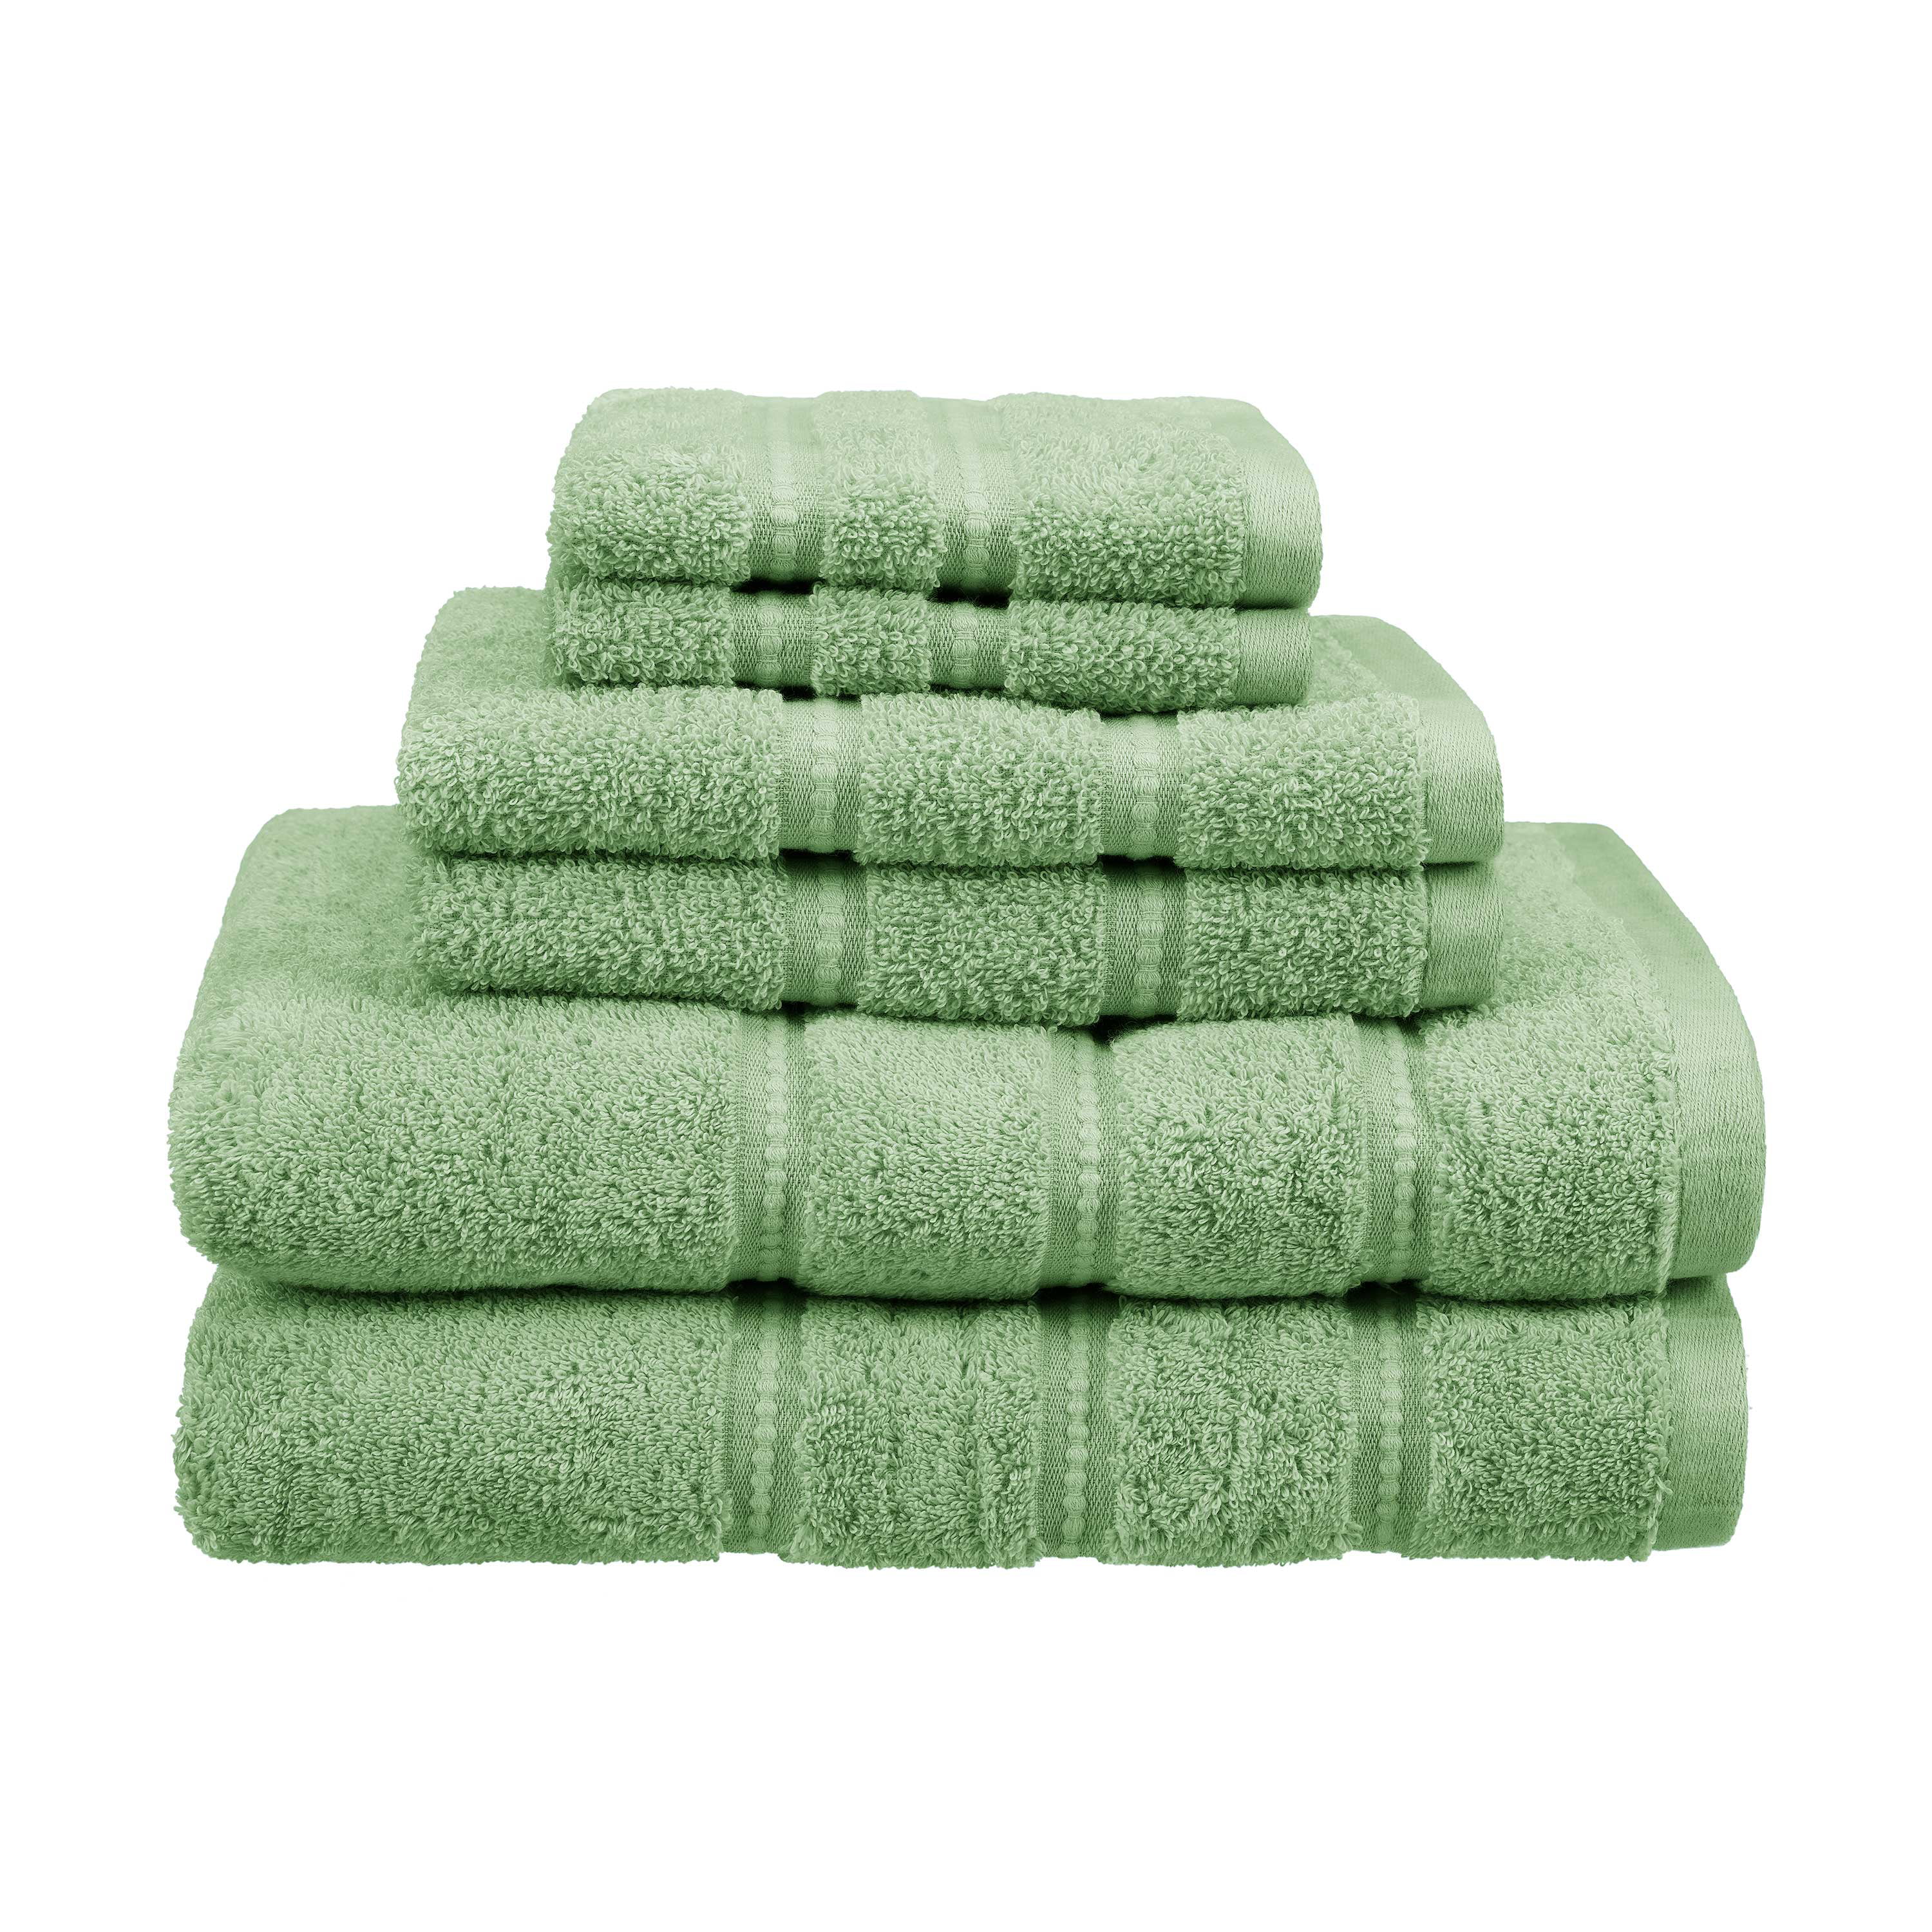 Martex Colors, Towels